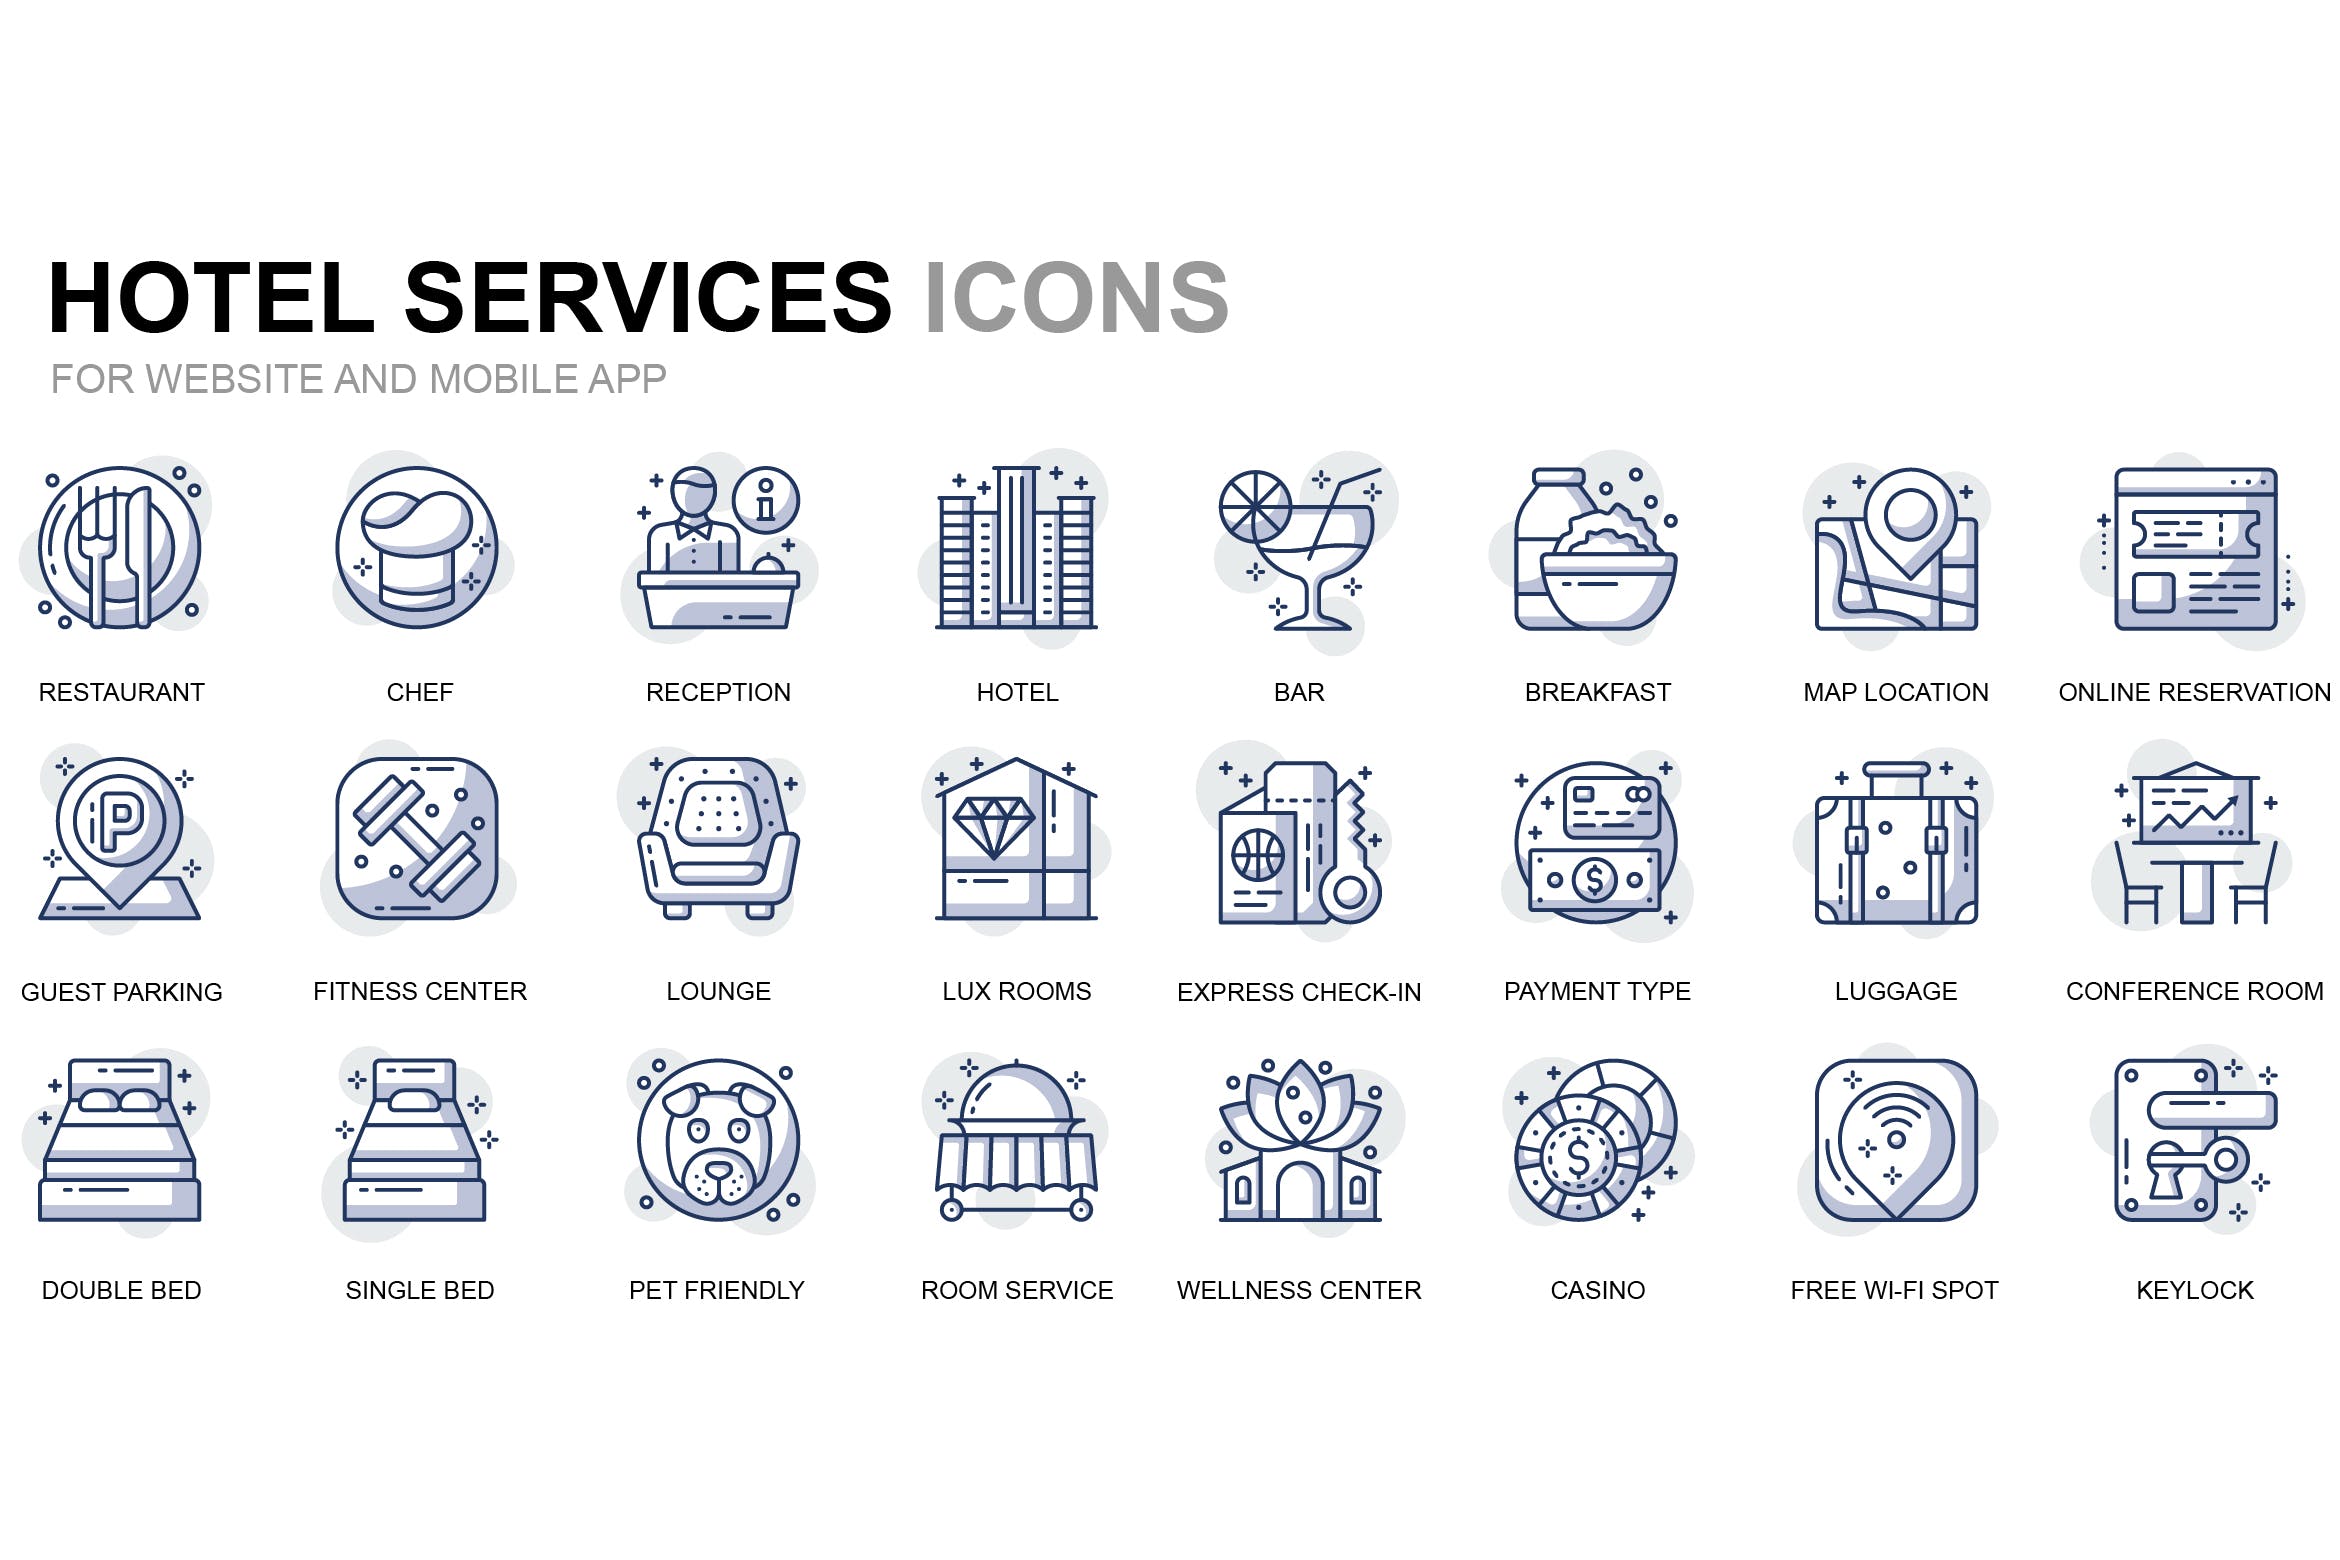 酒店服务主题线性图标矢量图标素材 Hotel Service Thin Line Icons插图